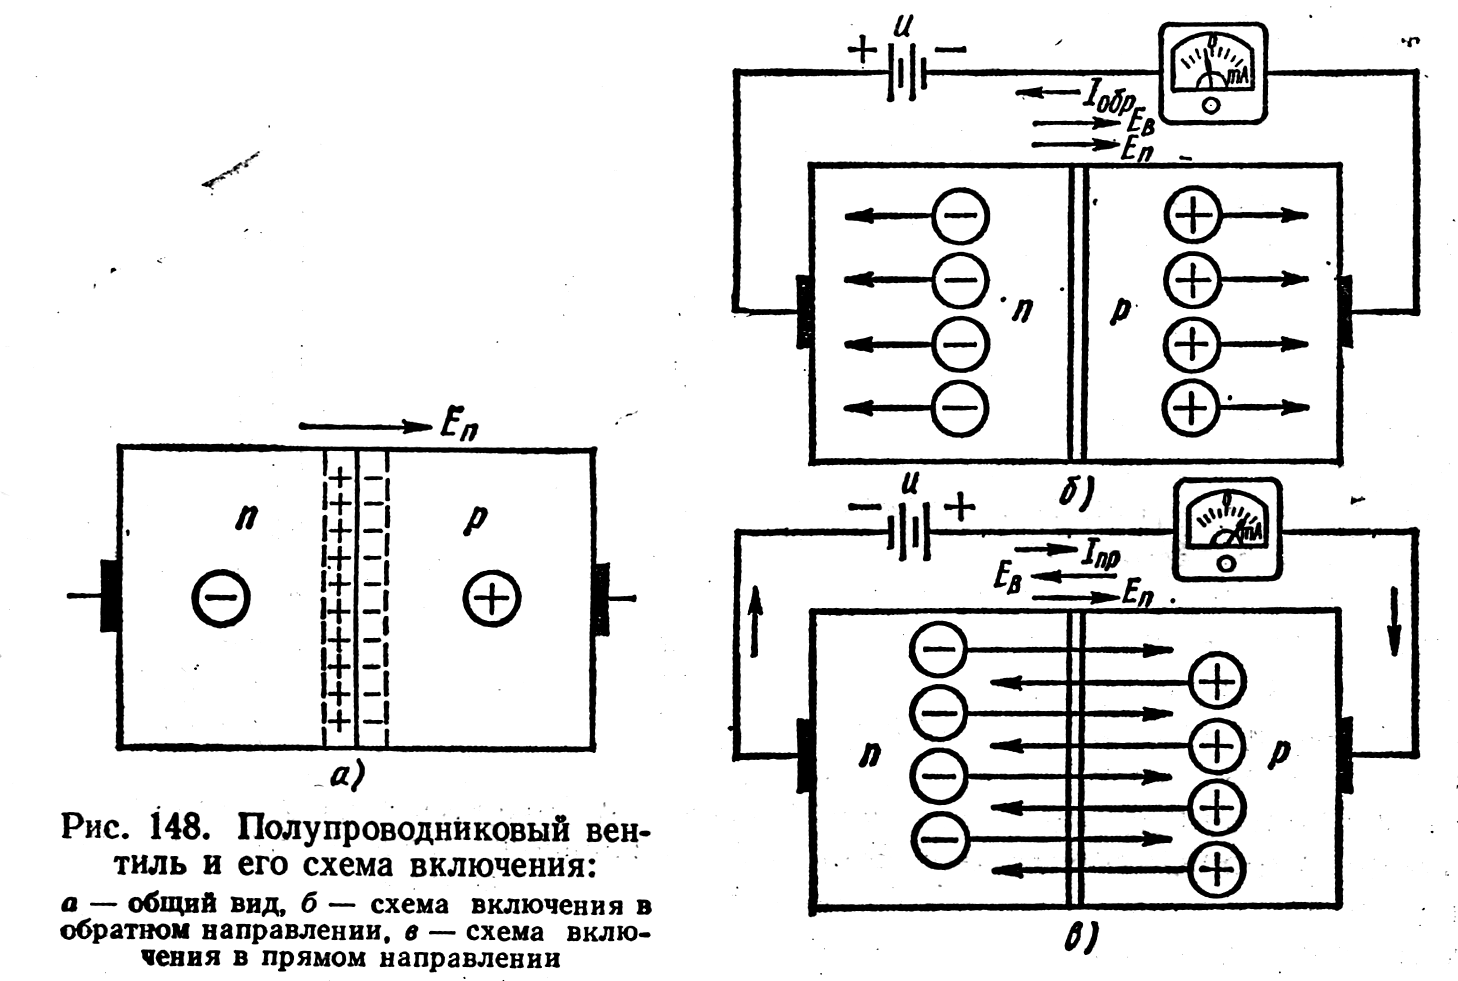 Прямое включение полупроводникового диода. Схема прямого включения полупроводникового диода. Прямое и обратное включение полупроводникового диода. Р-N переход полупроводников приборов.